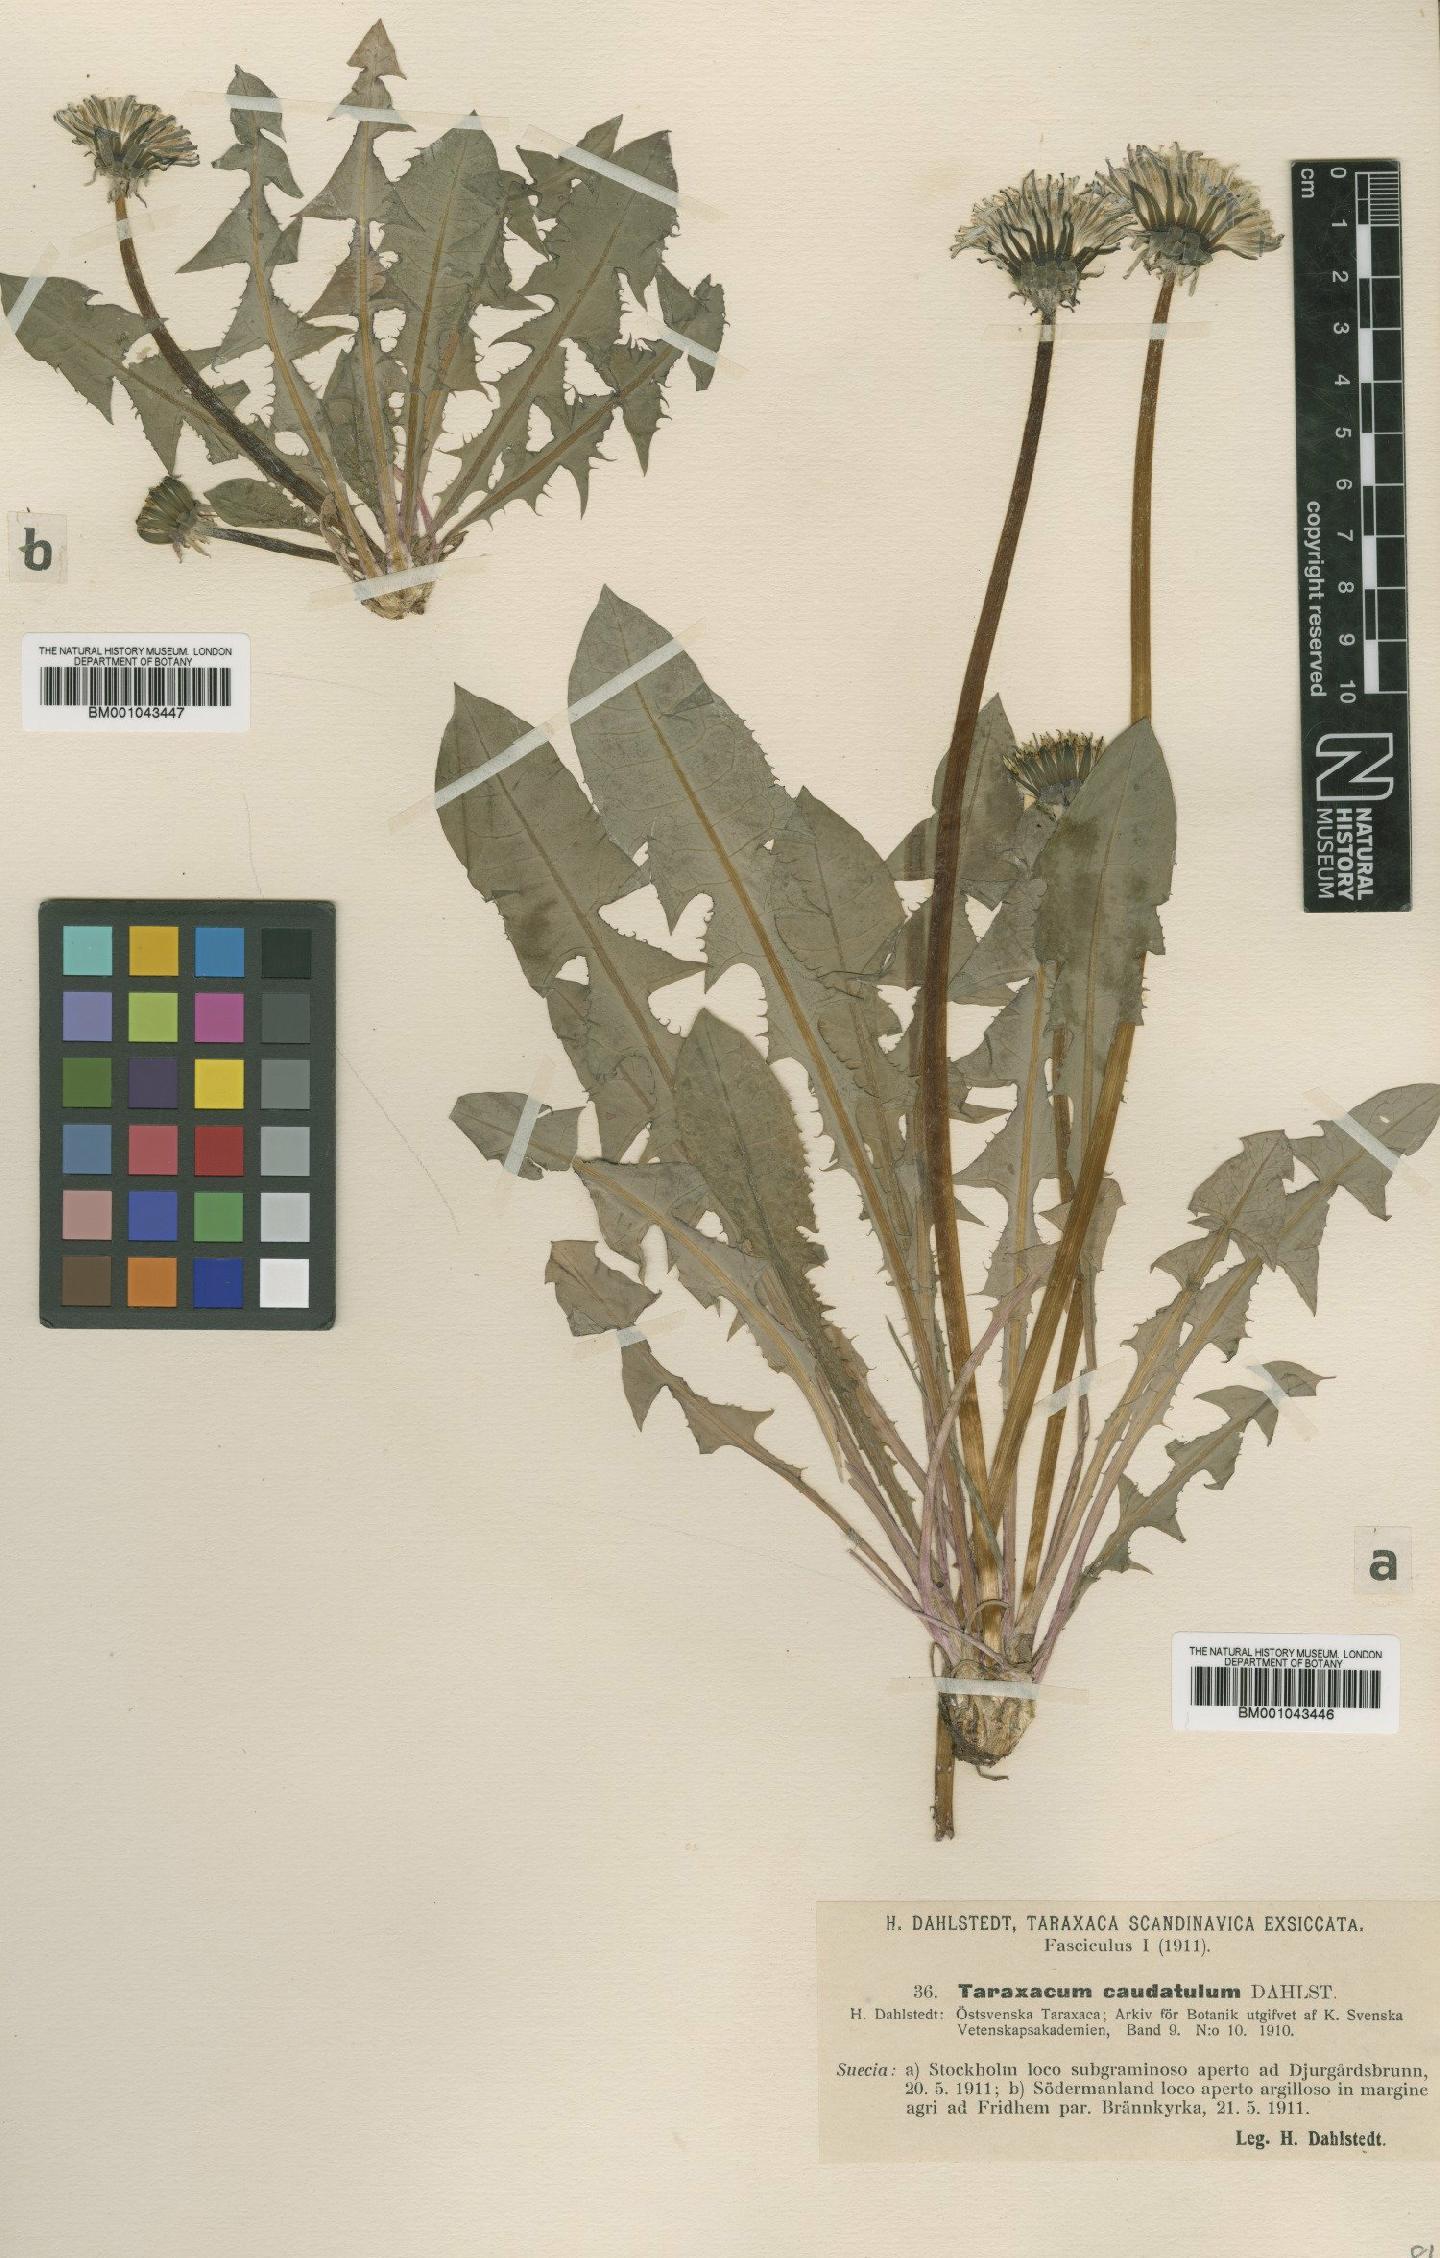 To NHMUK collection (Taraxacum caudatulum Dahlst; Type; NHMUK:ecatalogue:1998267)